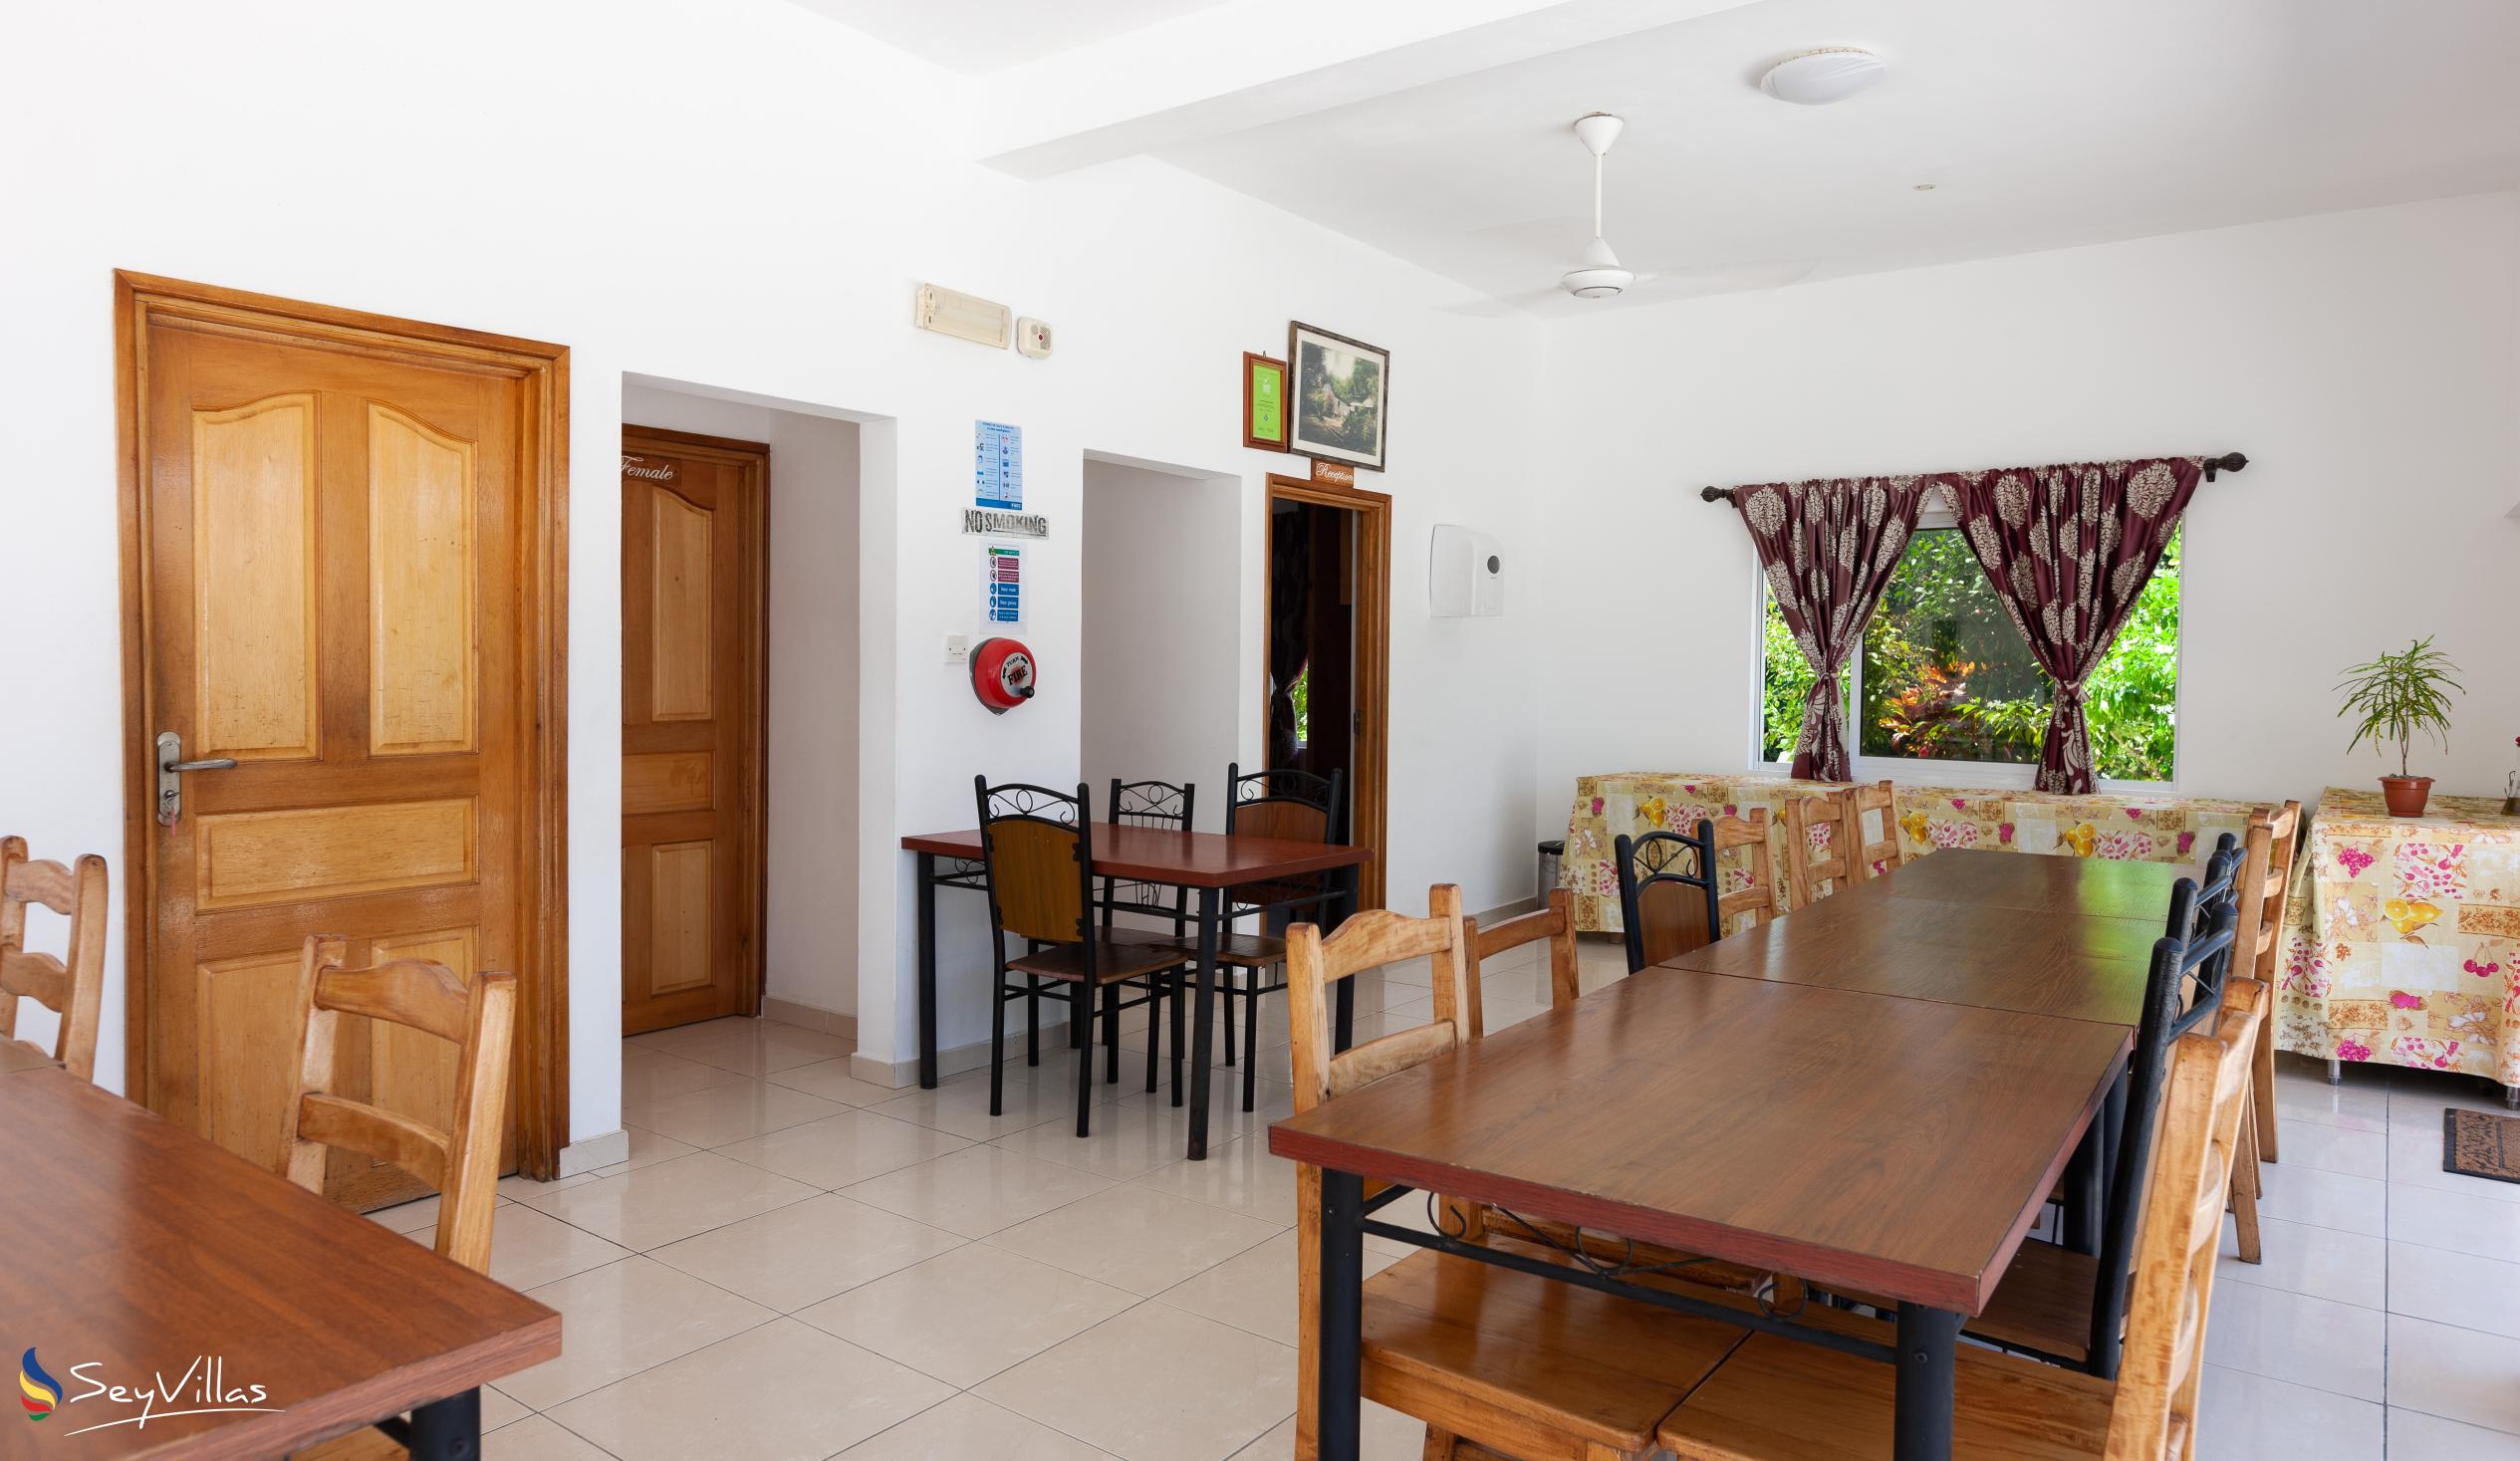 Foto 18: Casadani Luxury Guest House - Innenbereich - Praslin (Seychellen)